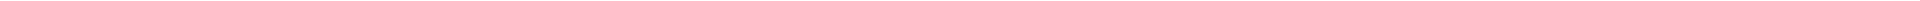 Стоматологическое обследование в Алматы, Астане (Нур-Султан), Атырау, Усть-Каменогорск, Уральск, Кокшетау в Казахстане, фото 9